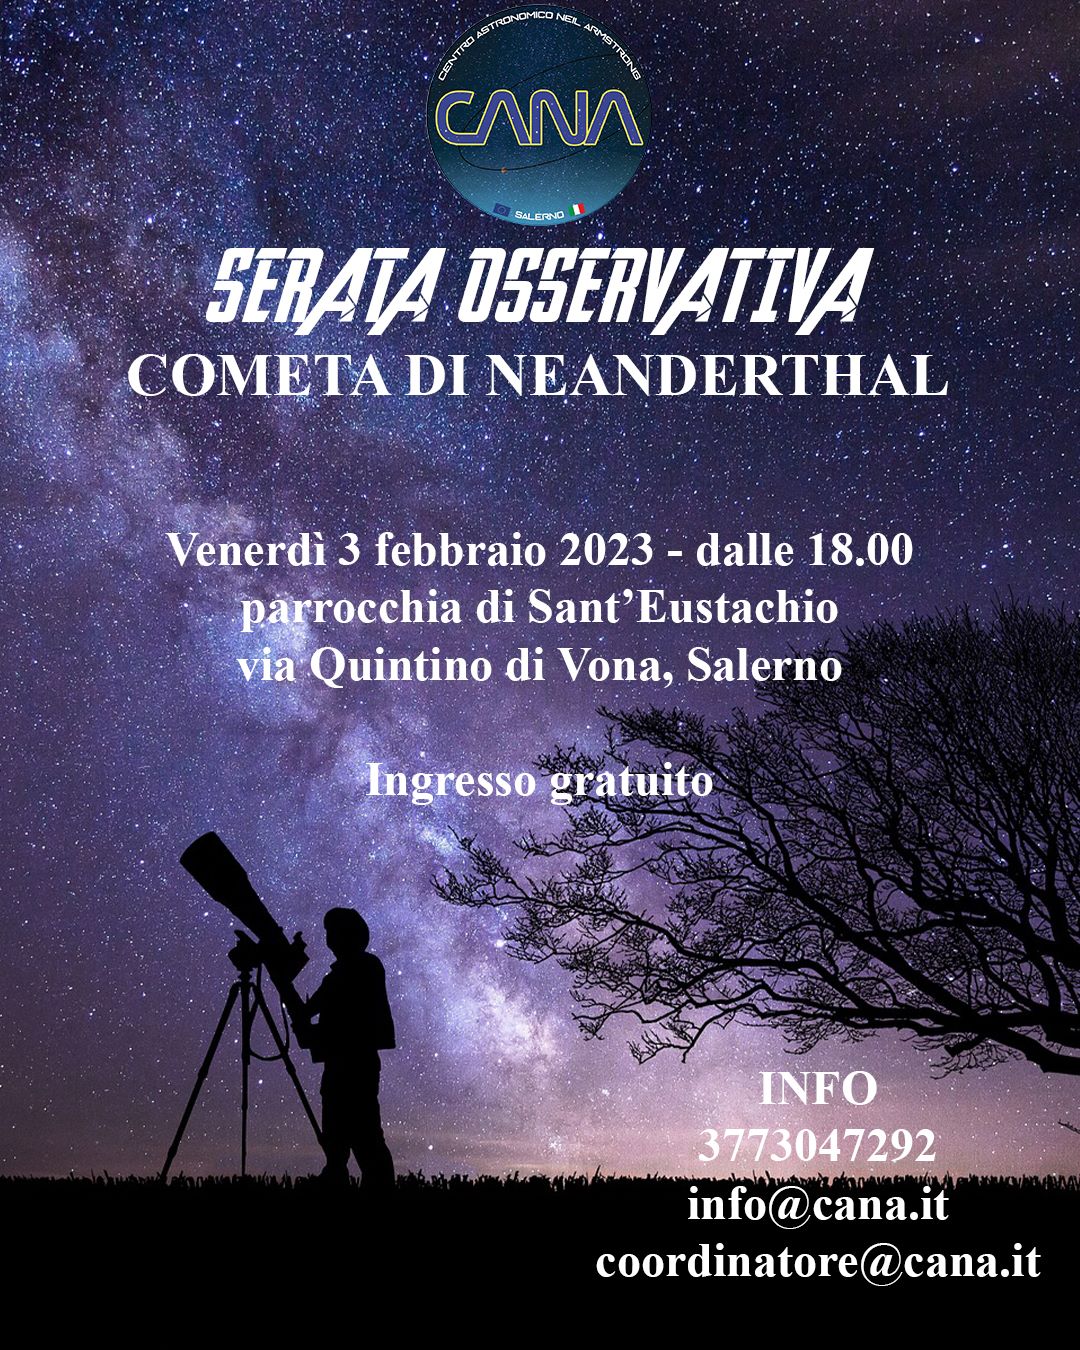 Salerno: Centro astronomico Cana, serata osservativa cometa di Neanderthal